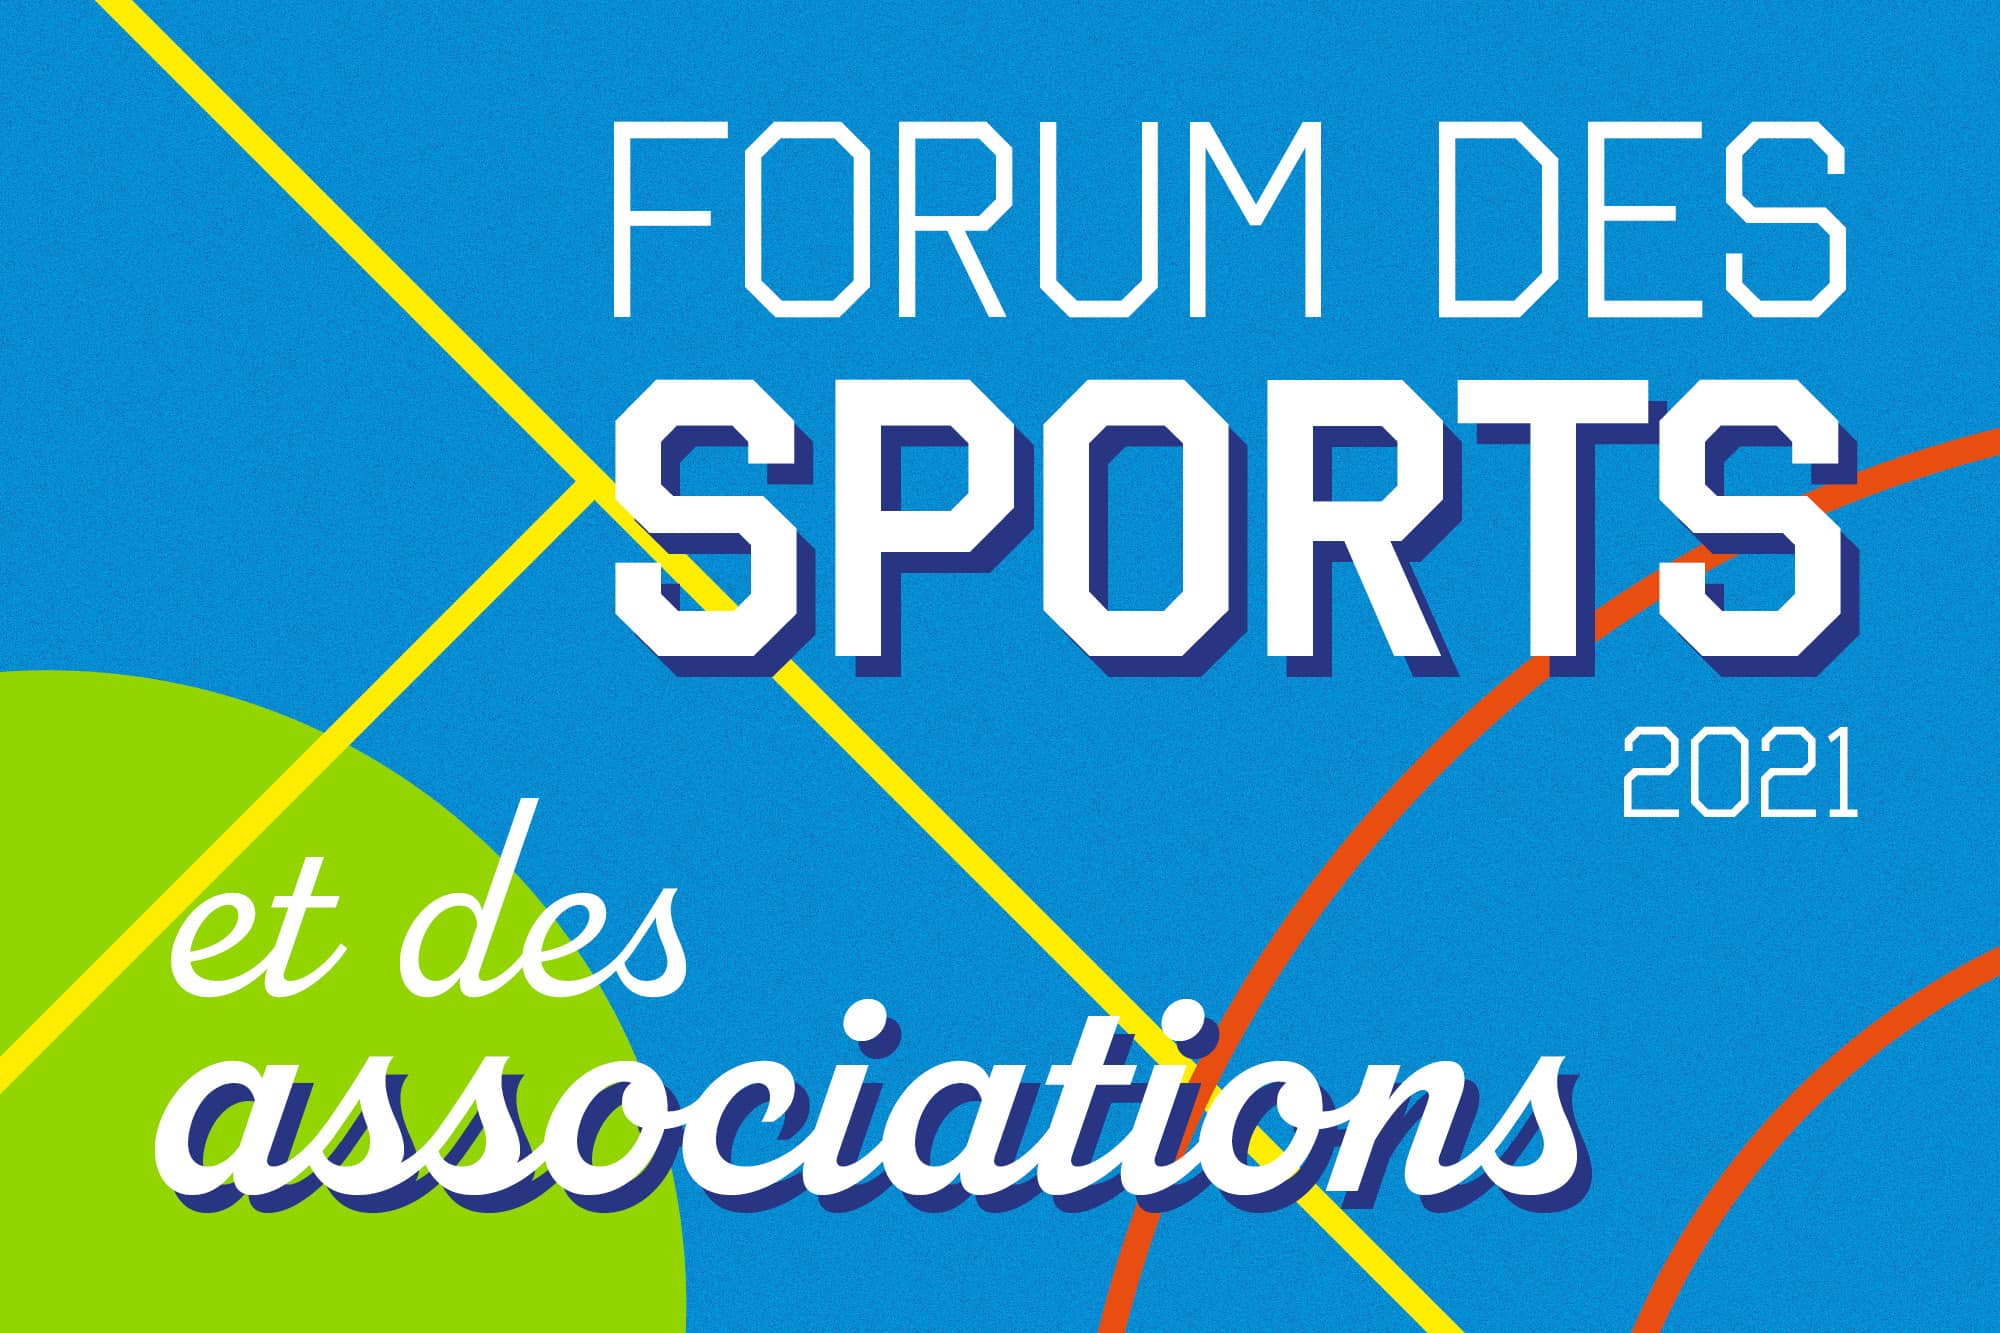 Affiche annonçant le forum des sports et des associations 2021, le 4 septembre de 9h30 à 17h